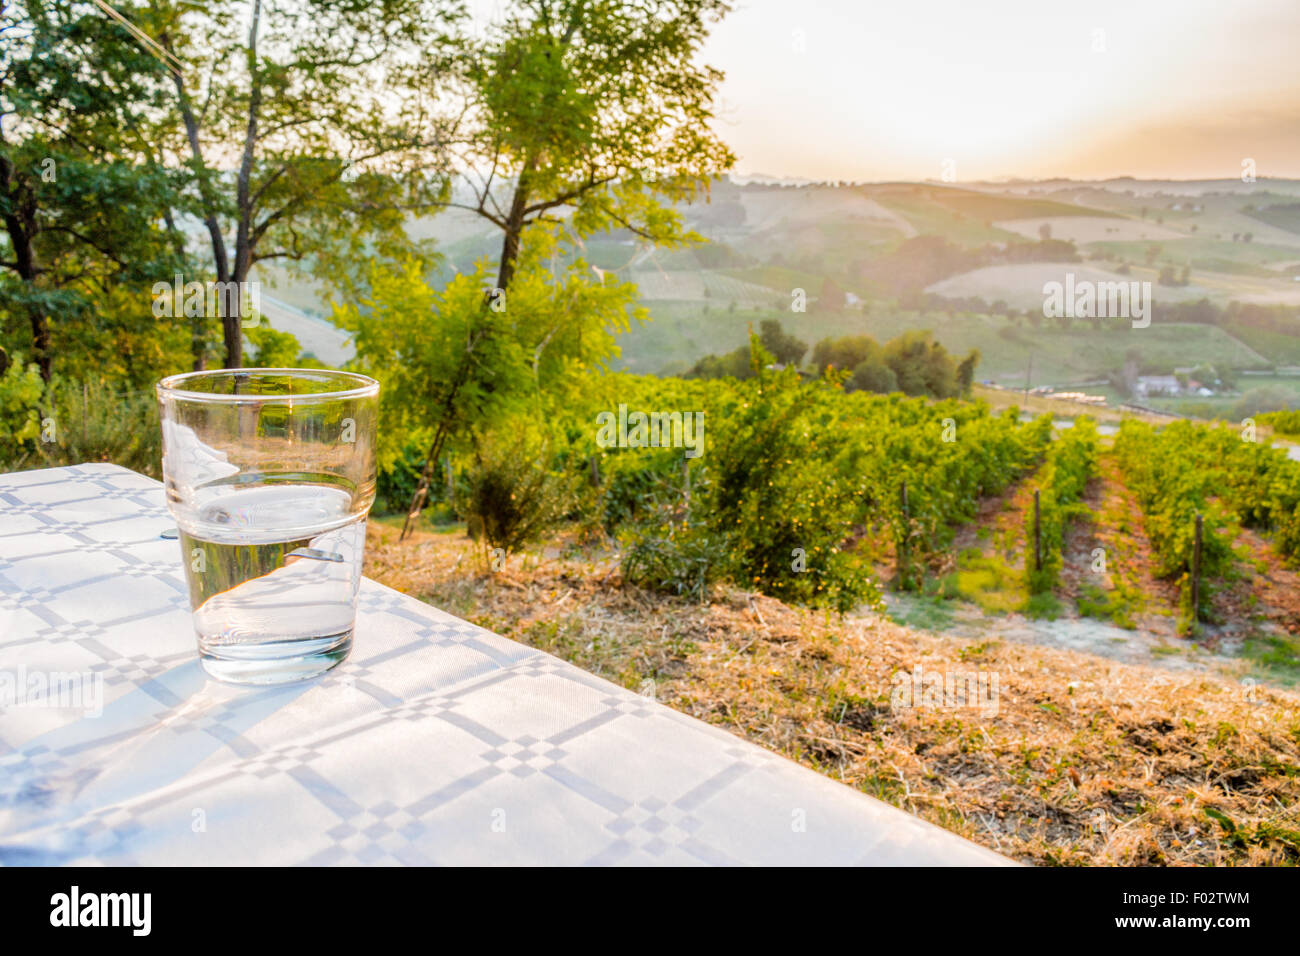 Abendessen auf dem Lande - Glas klar, frisch und süß Wasser auf einem Tisch mit Weinbergen, Ackerland und grüne Vegetation der Landschaft im Hintergrund Stockfoto